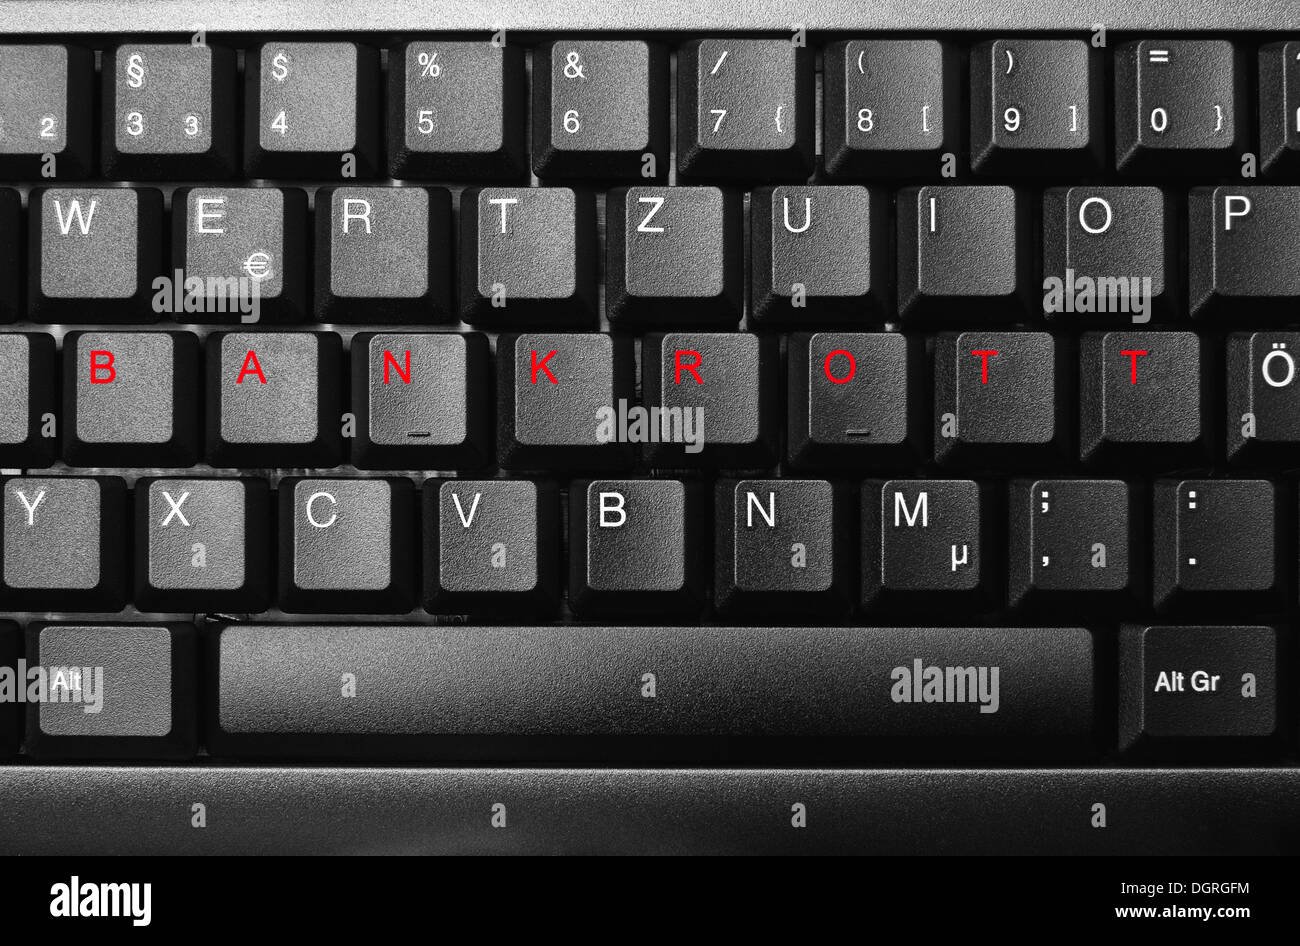 Con la palabra "teclado" Bankrott, quiebra en rojo Foto de stock